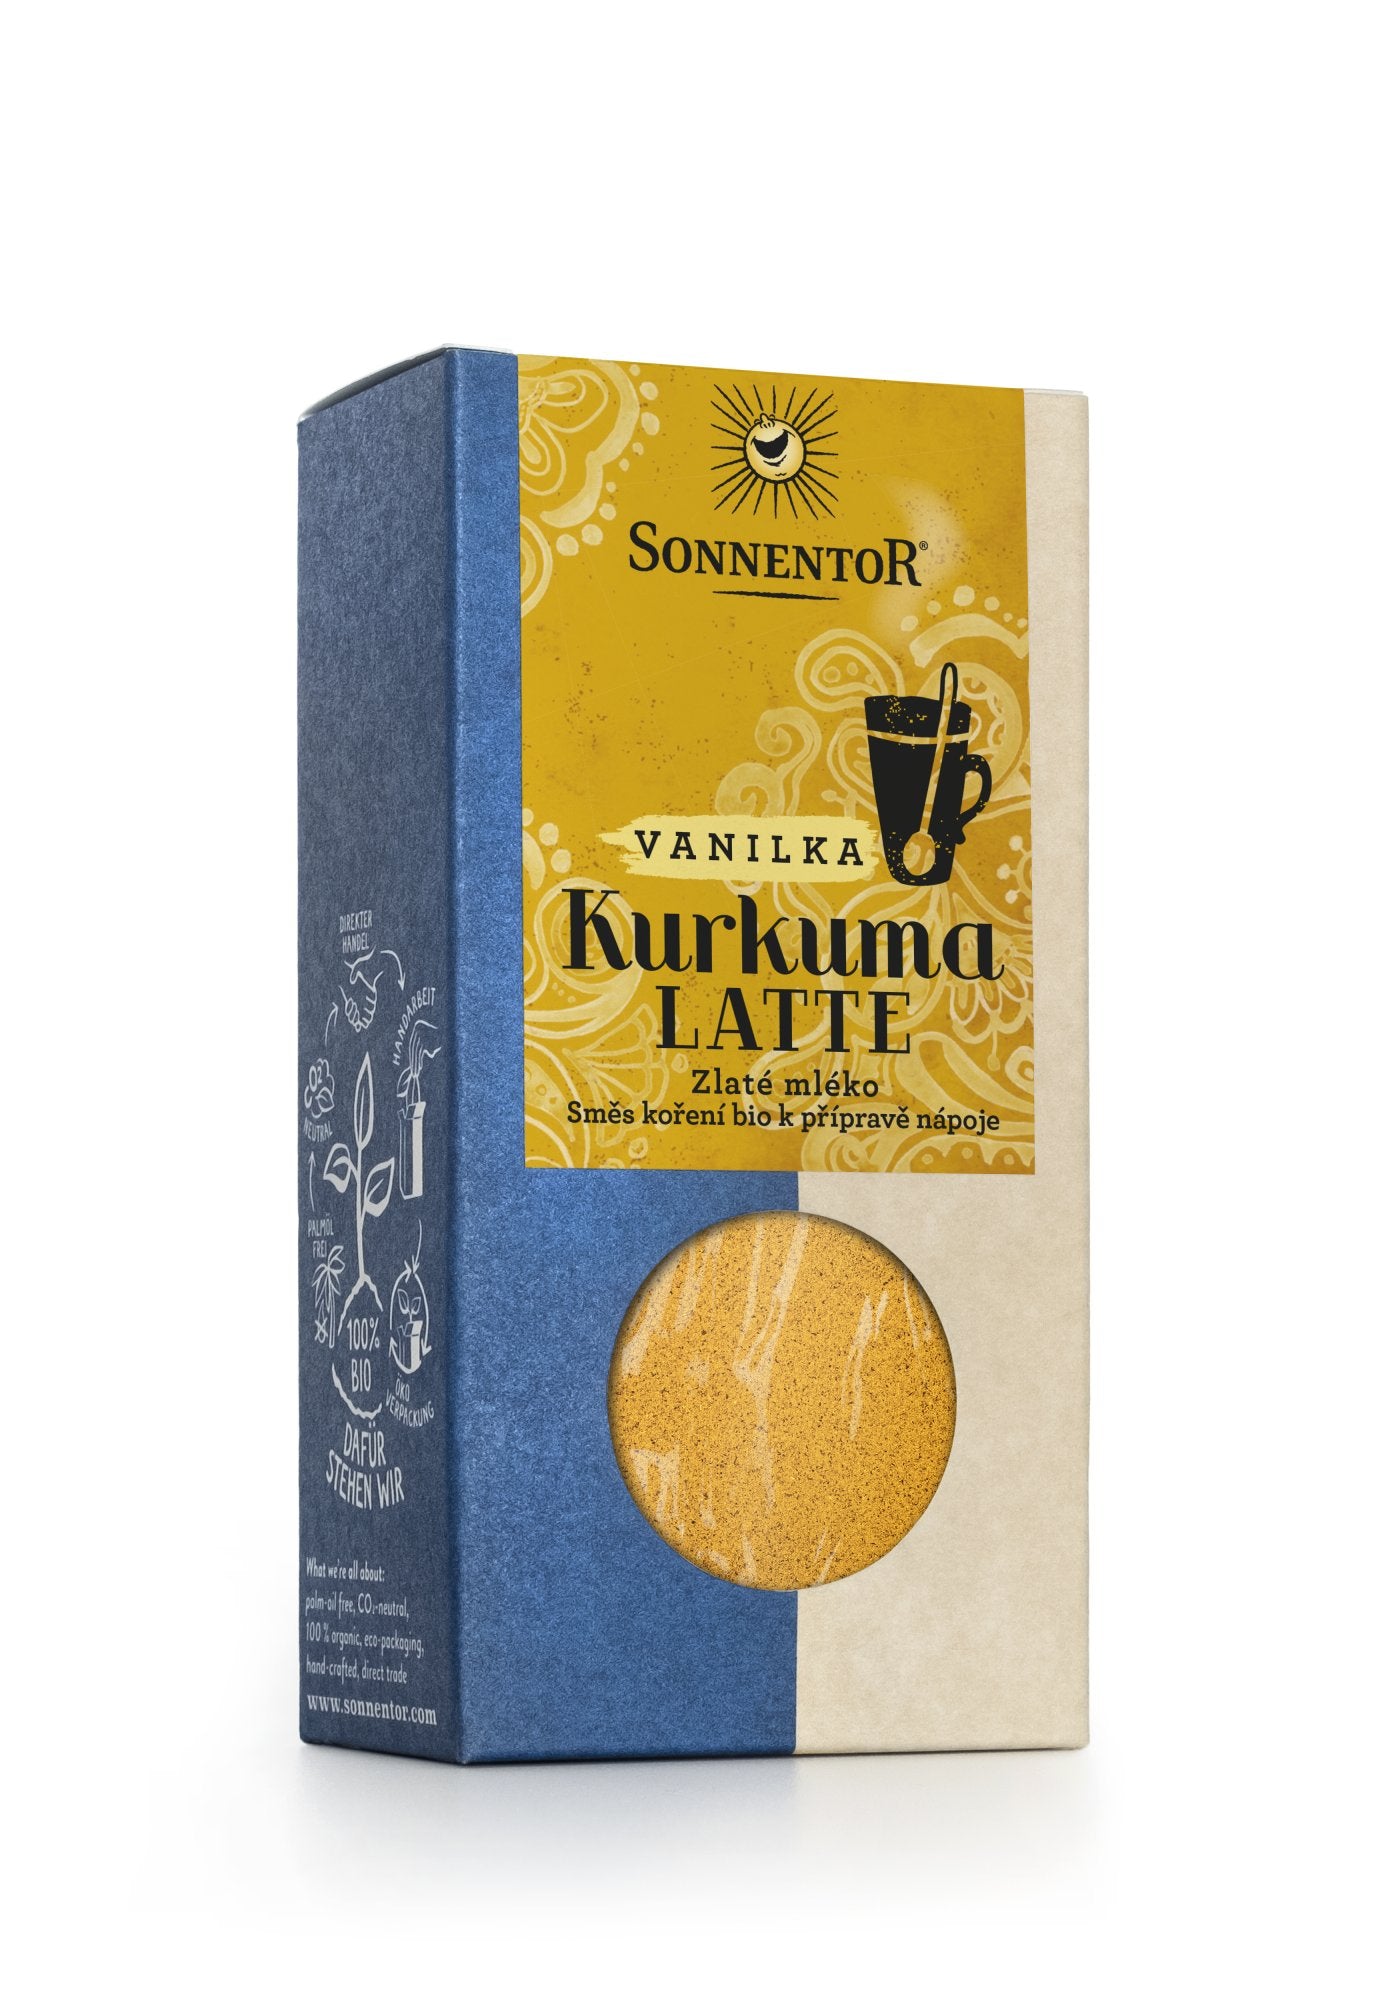 Sonnentor Kurkuma Latte vanilka BIO - dóza Krabička 60 g - směs k přípravě nápoje Sonnentor